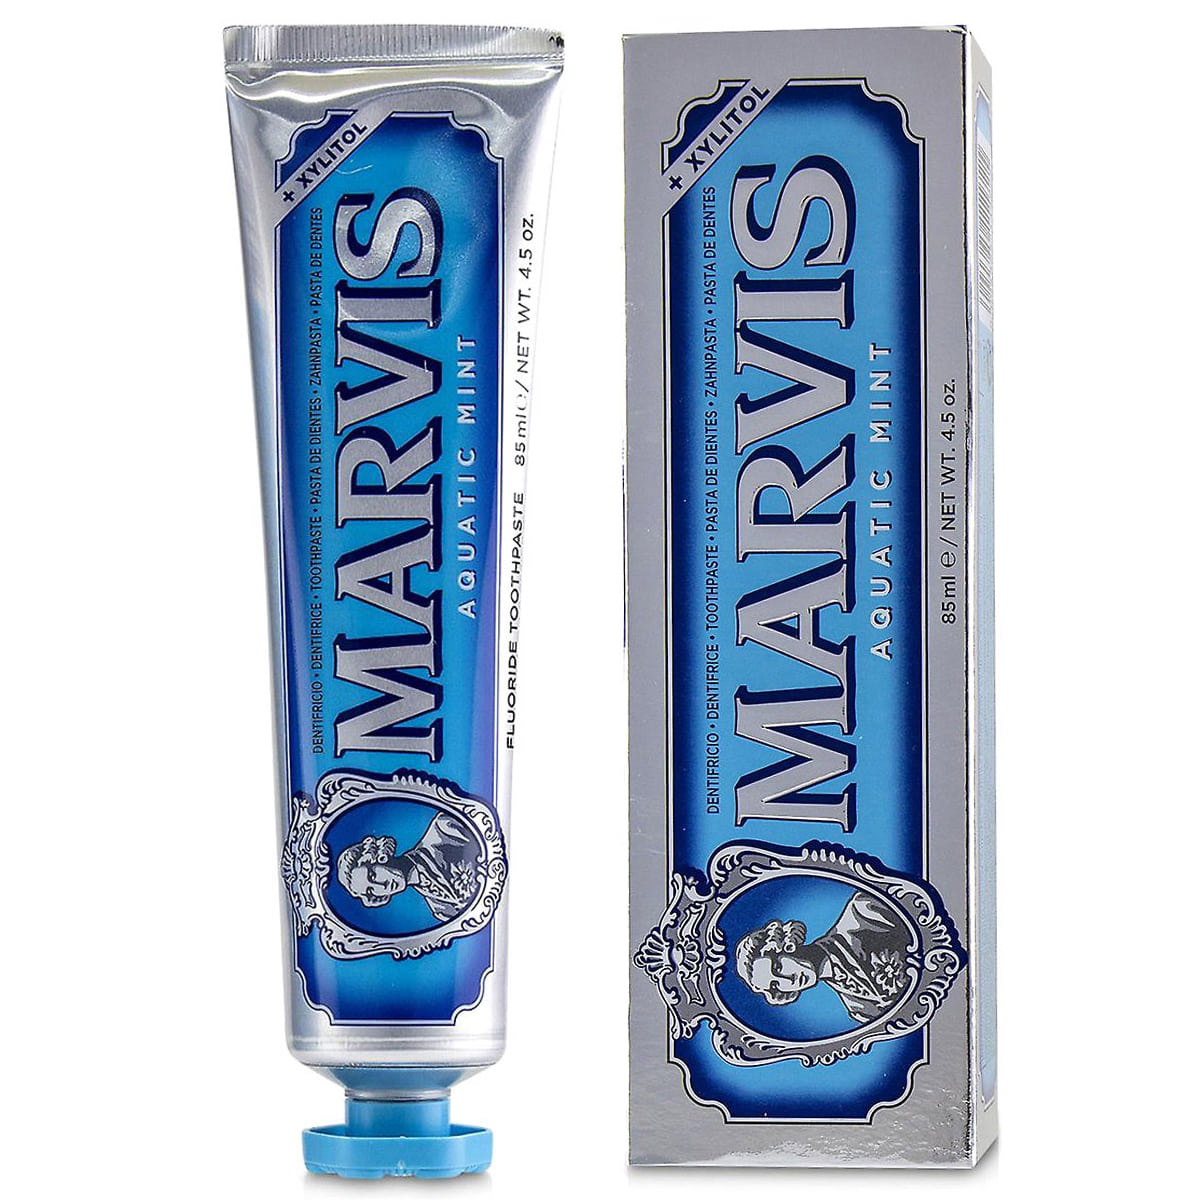 Зубная паста Marvis